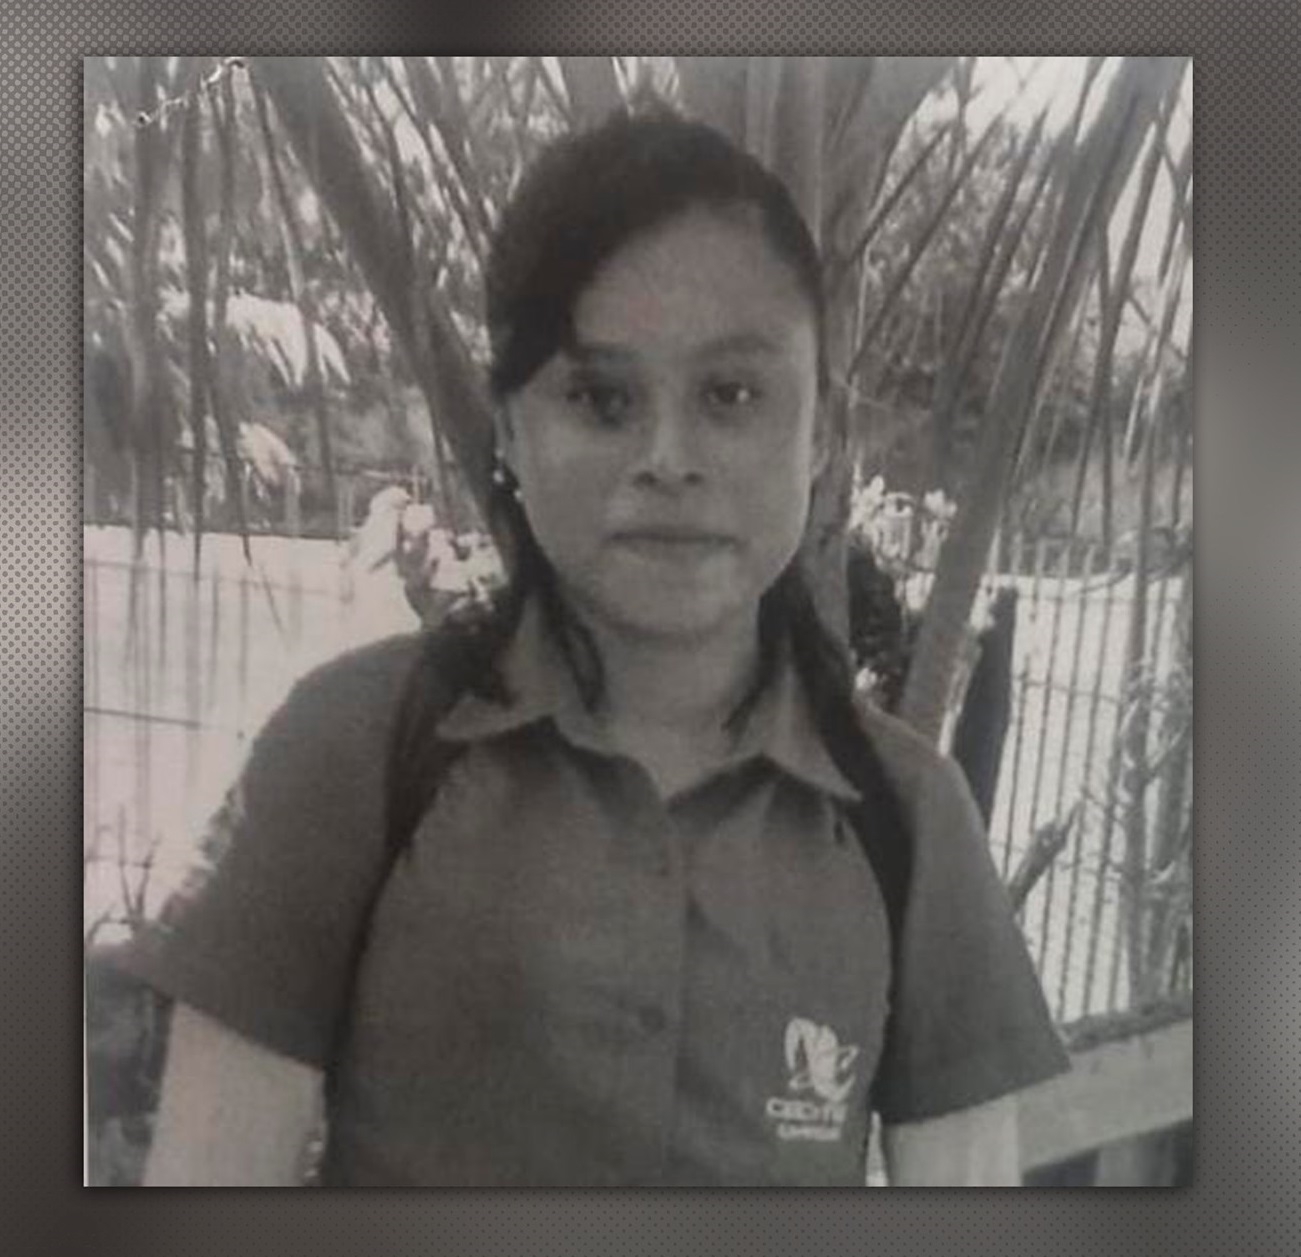 Desaparece joven de 16 años en Campeche